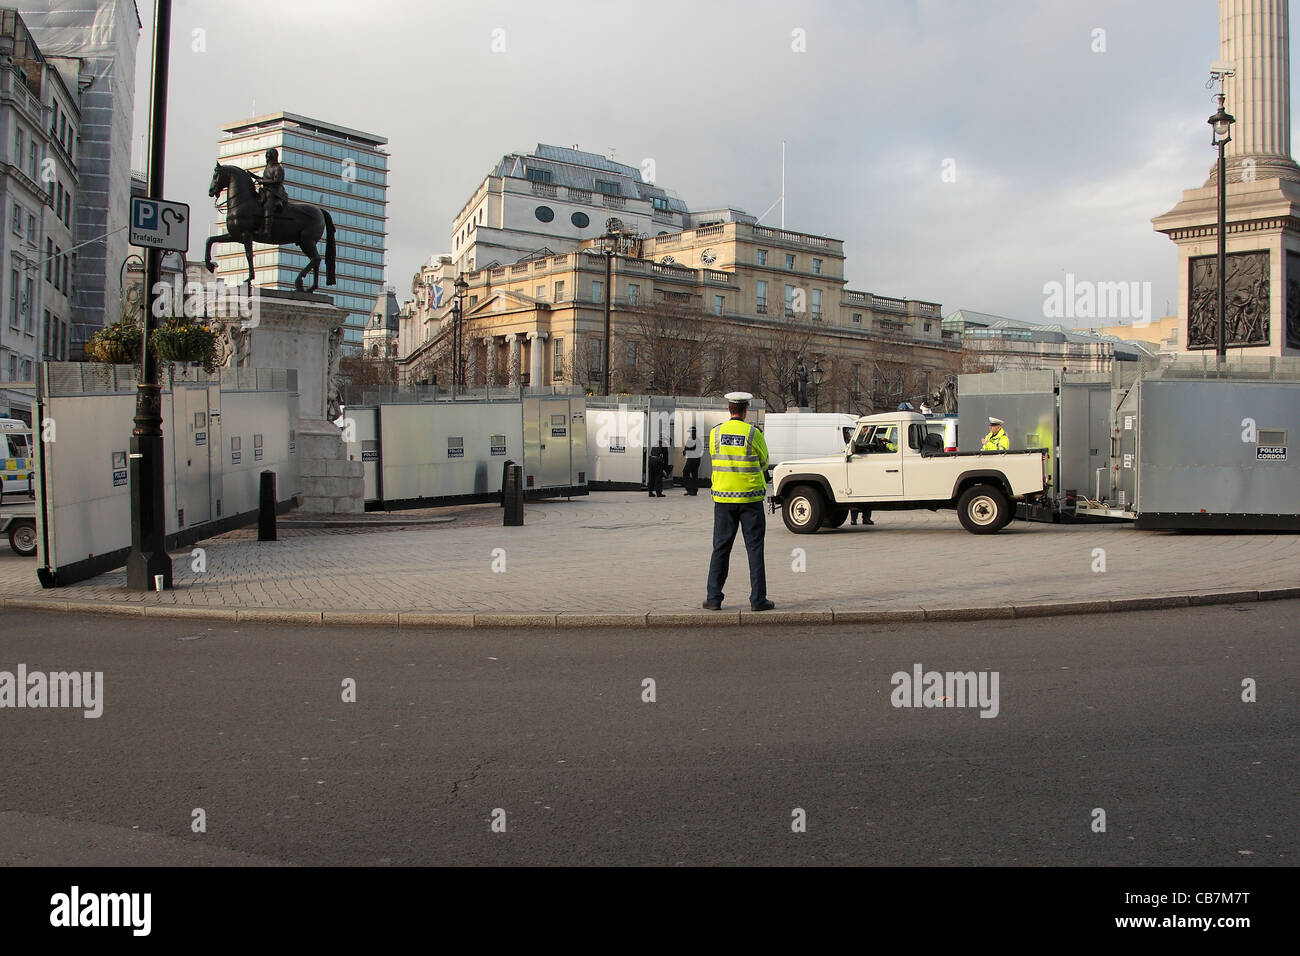 La policía puso barricadas alrededor de Trafalgar Square durante un golpeando los trabajadores del sector público. Foto de stock